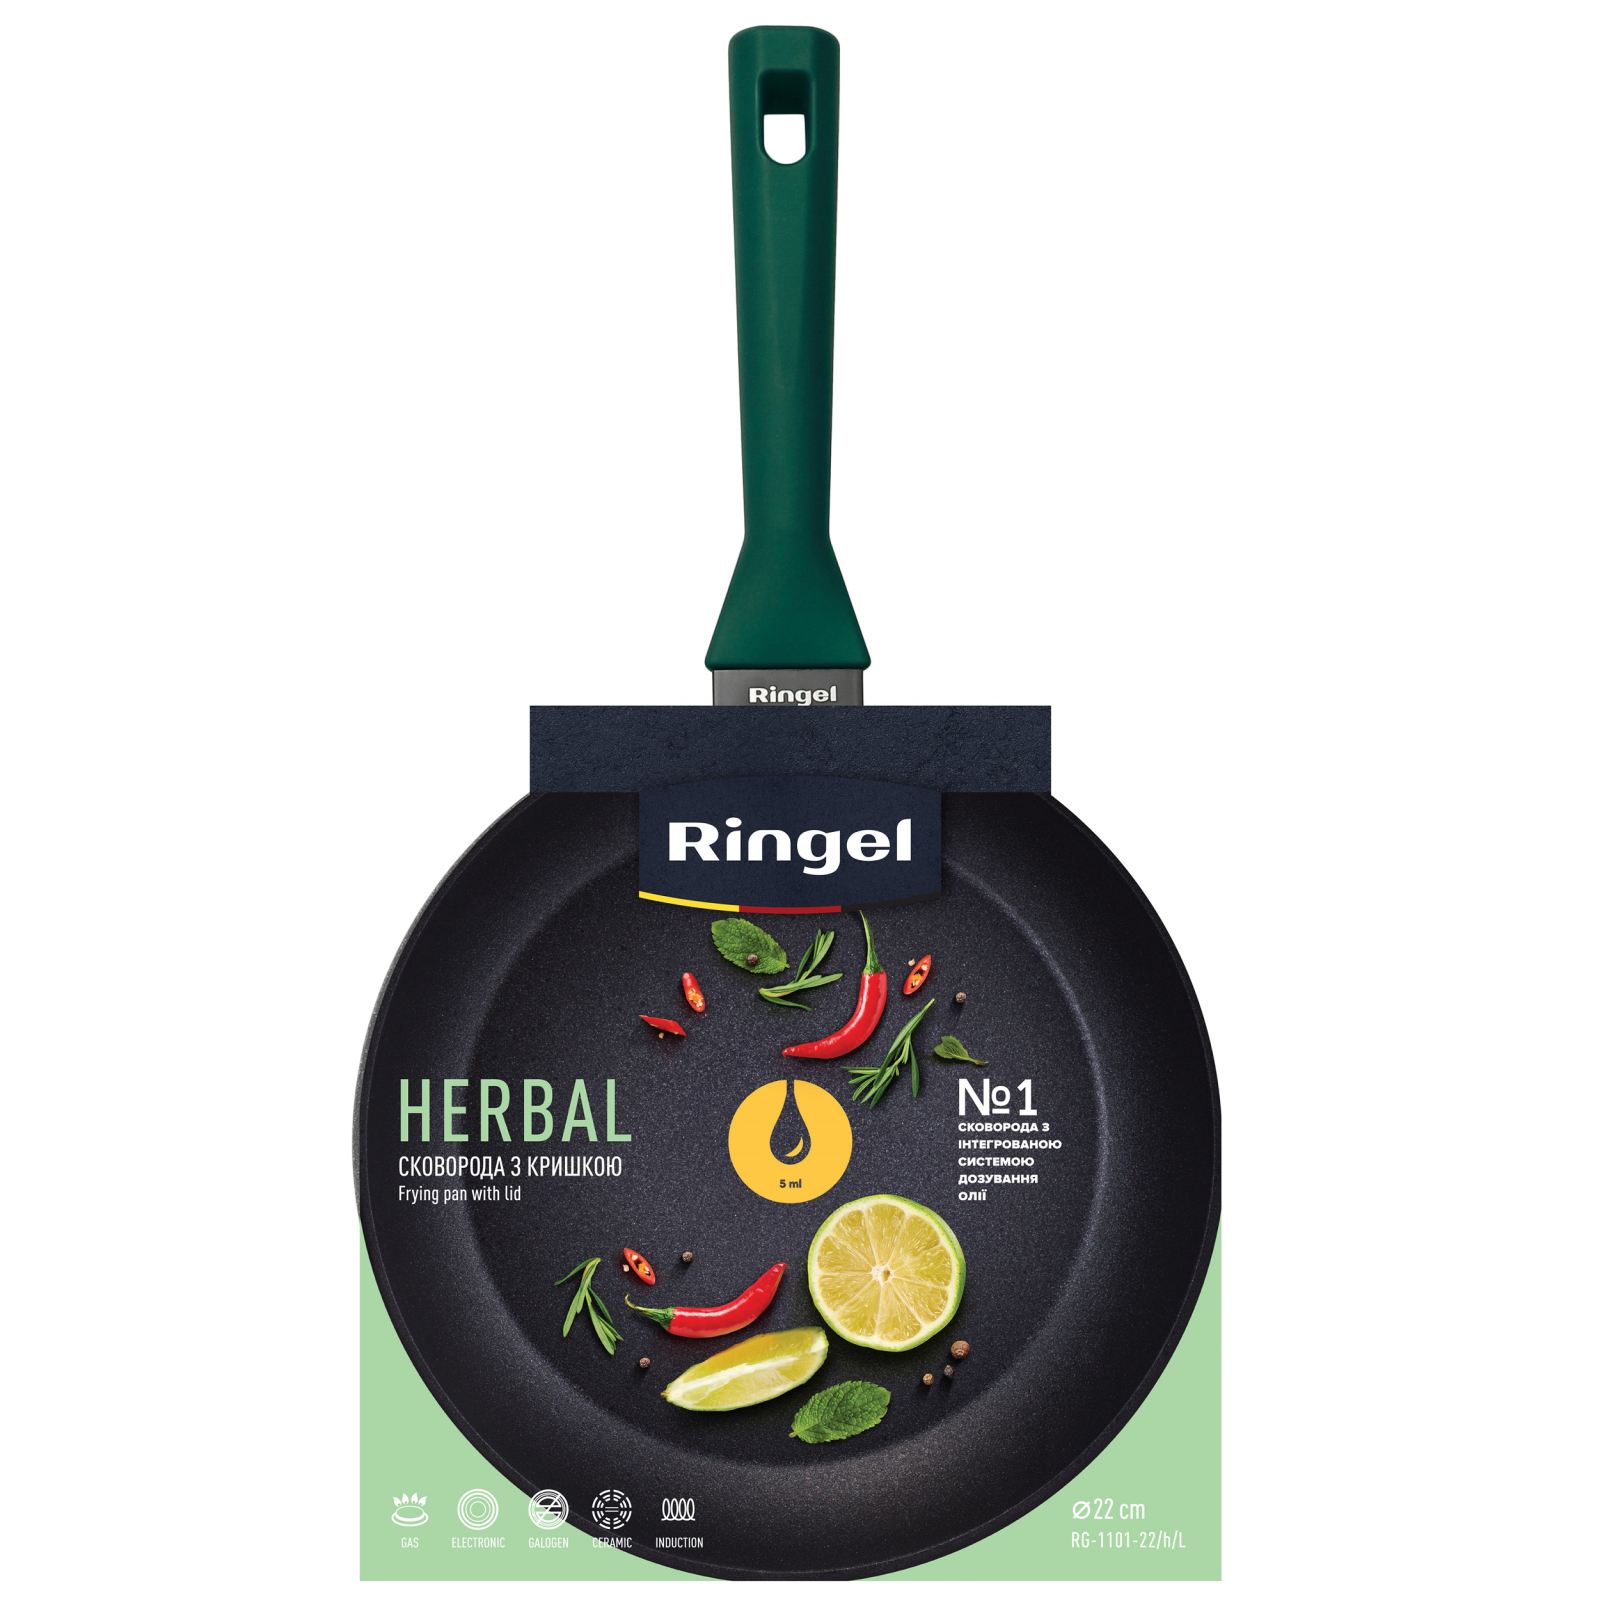 Сковорода Ringel Herbal 24 см (RG-1101-24/h/L) изображение 5